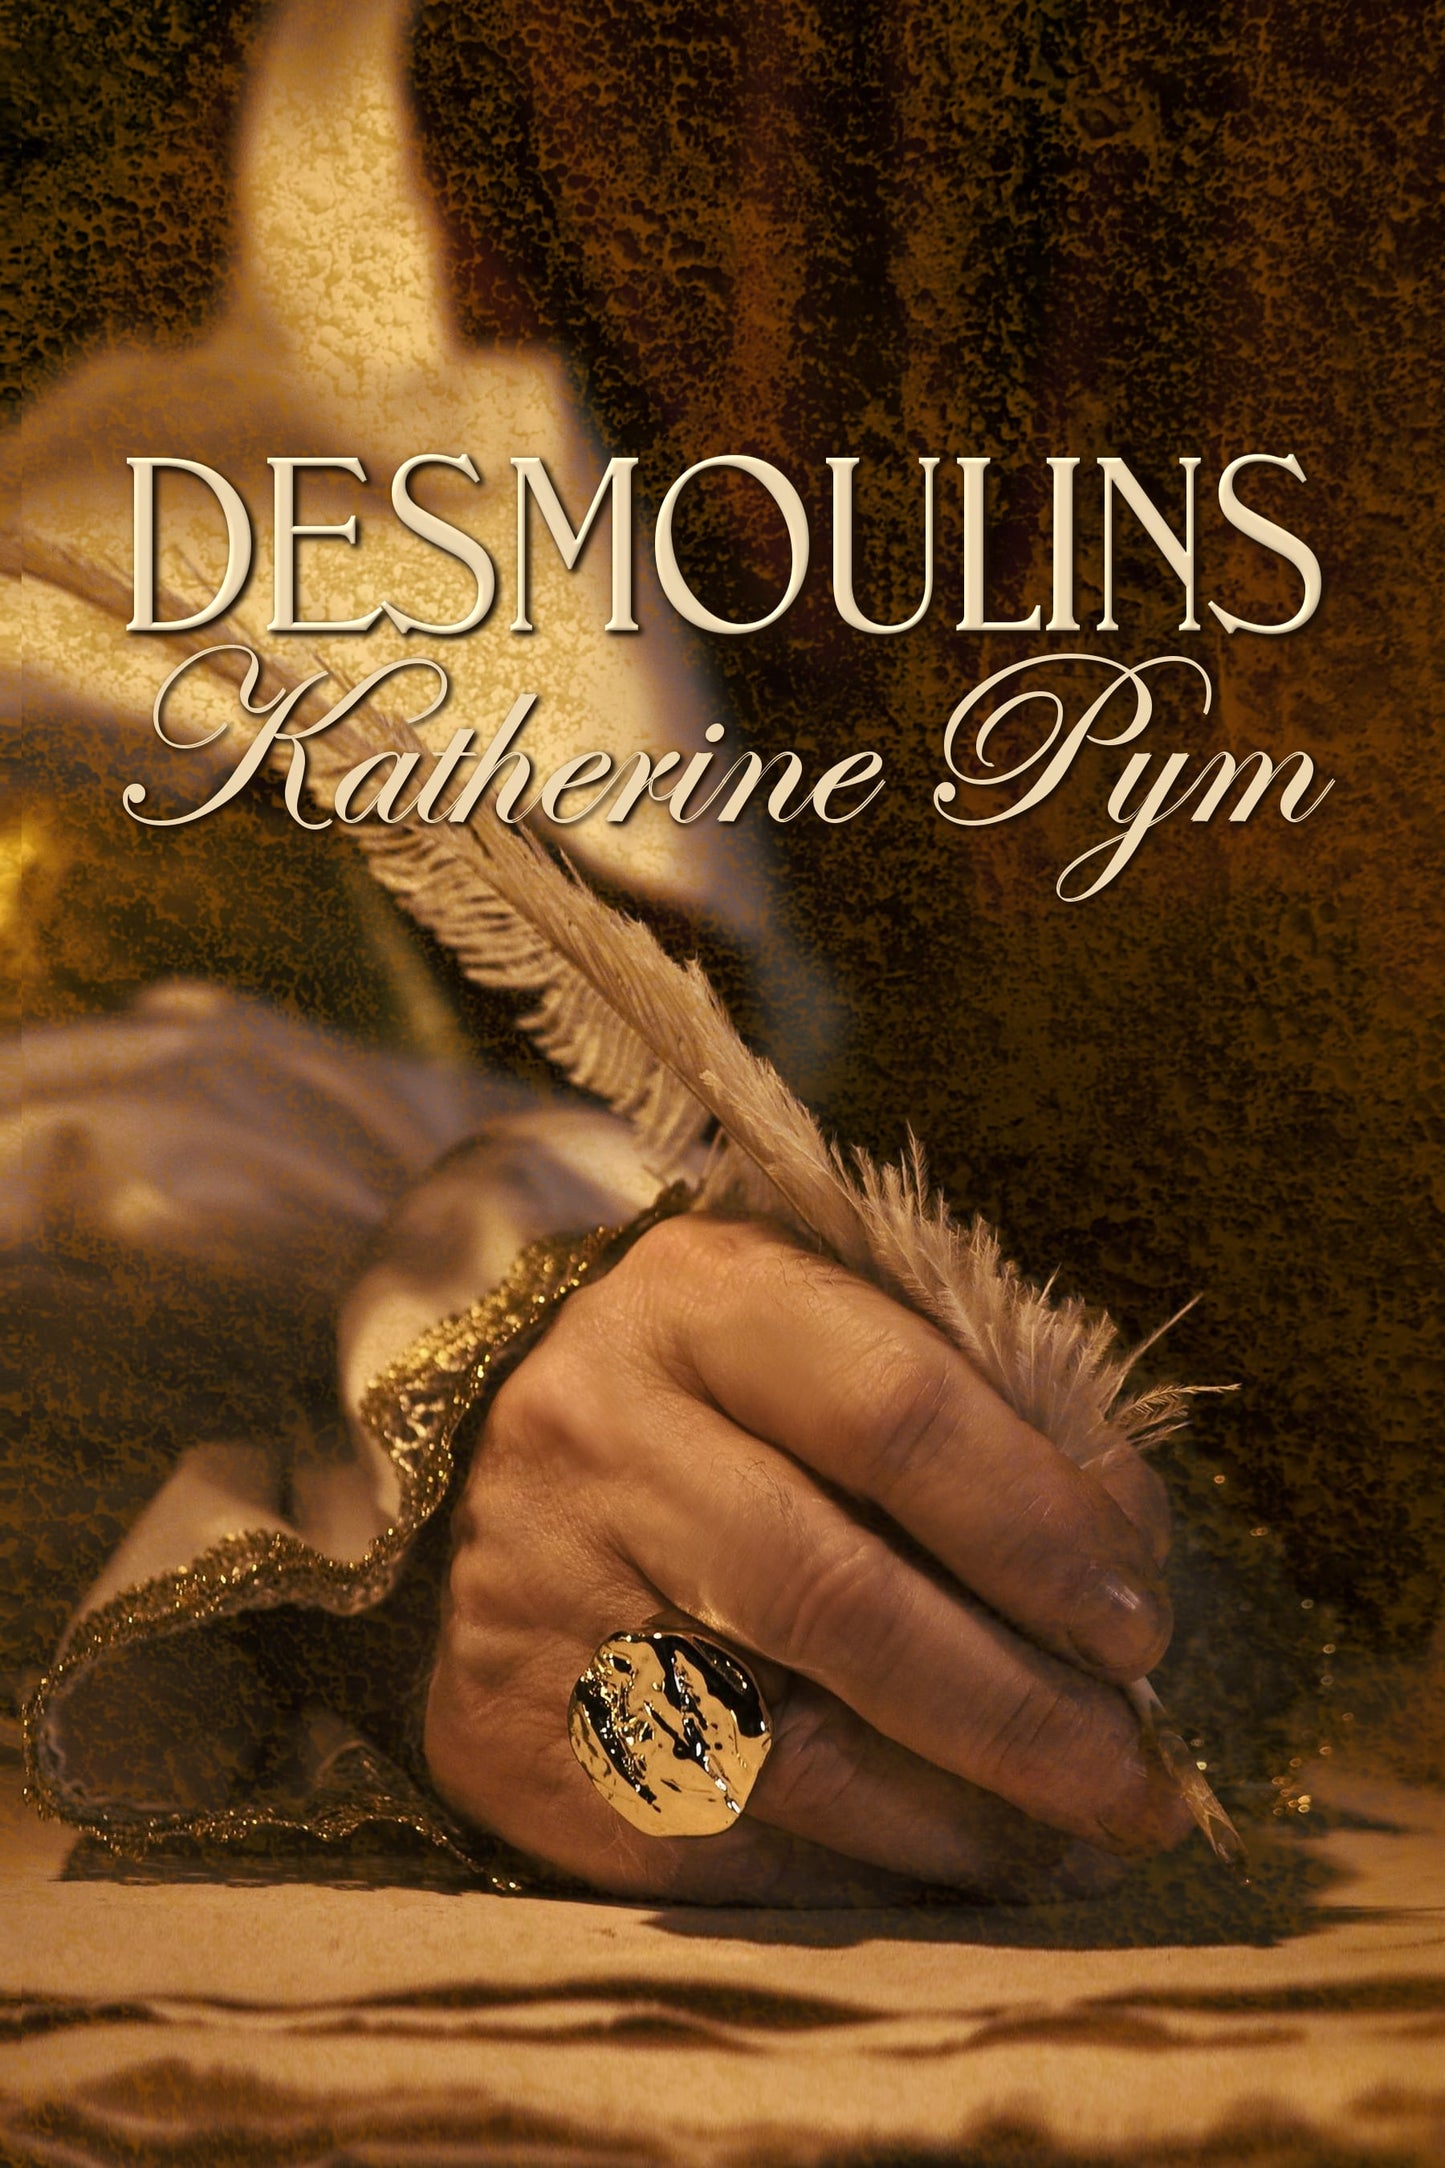 Desmoulins